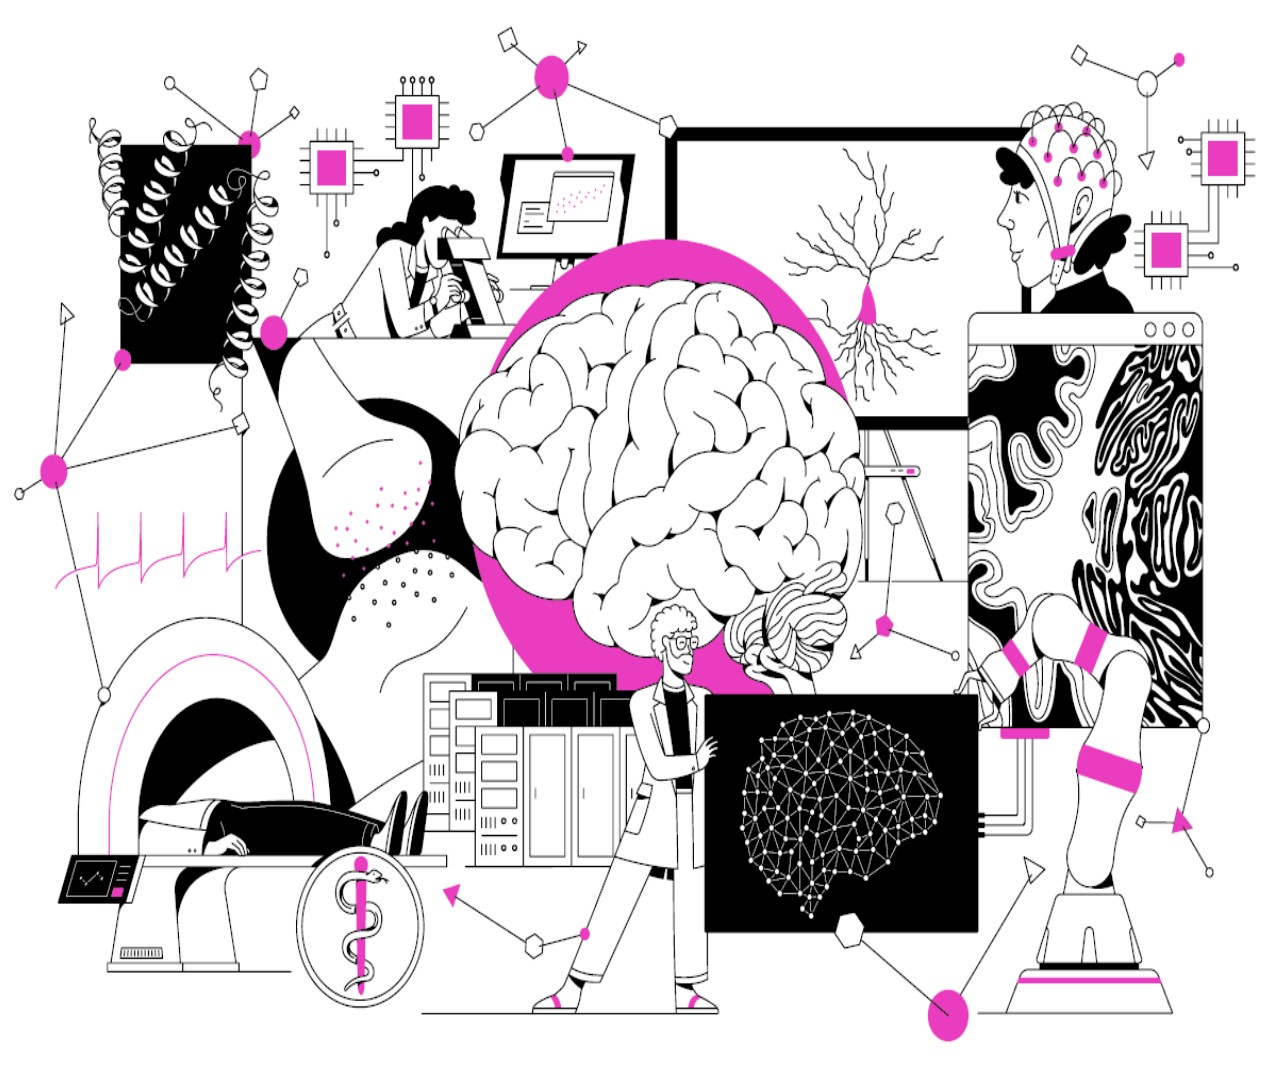 اعتمد مشروع الدماغ البشري على رؤية متعددة المقاربات والمنهجيات وتمزج علوم الأعصاب مع تكنولوجيات متنوعة